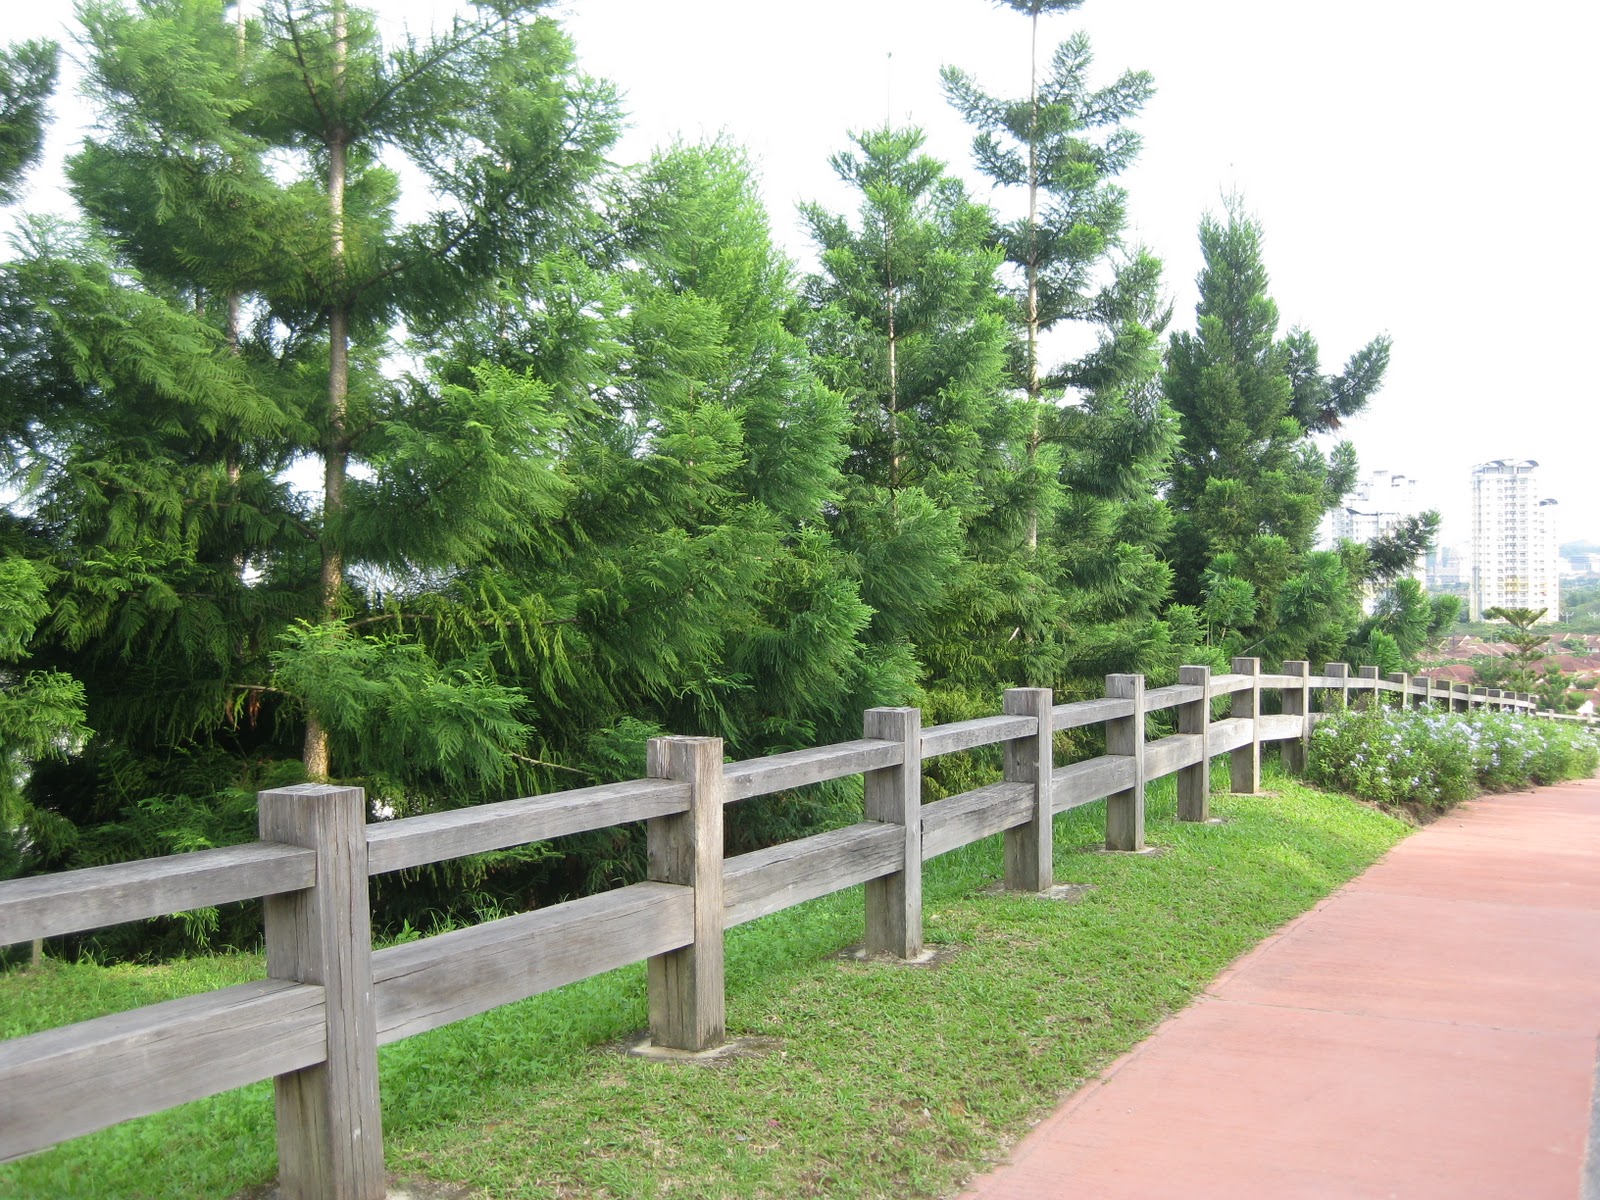 B l o g f o t o: Taman Saujana Hijau, Putrajaya